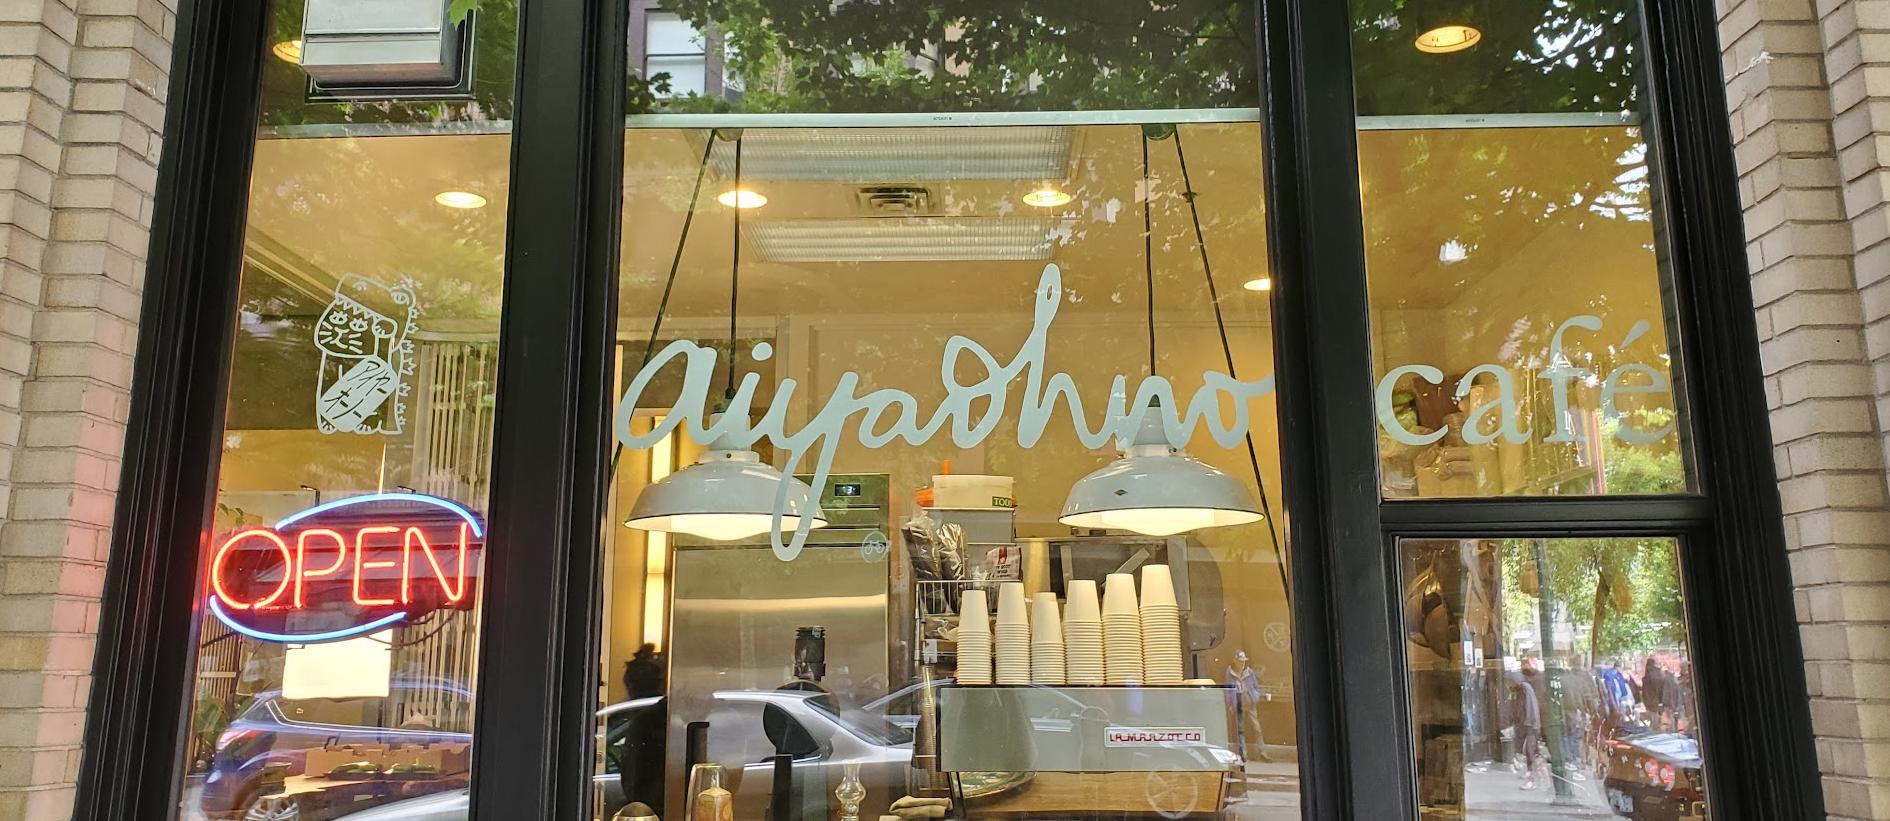 Café Aiyaohno